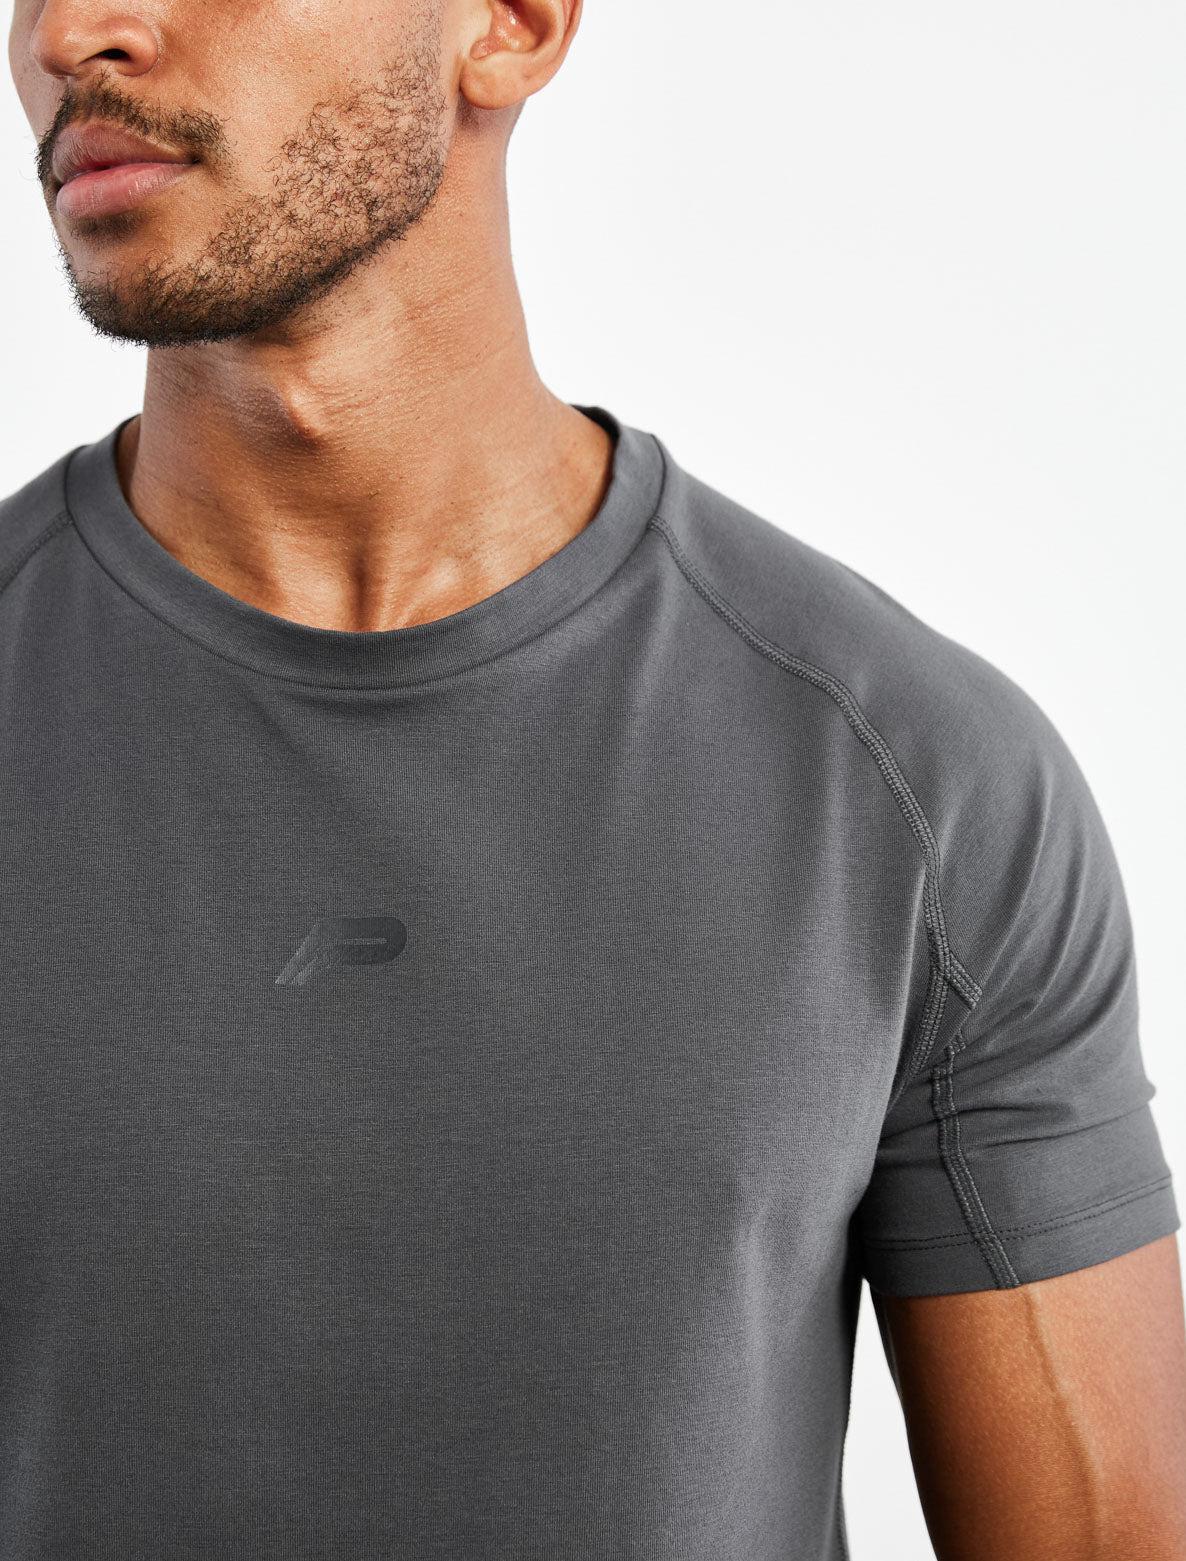 Icon T-Shirt / Dark Grey Pursue Fitness 5